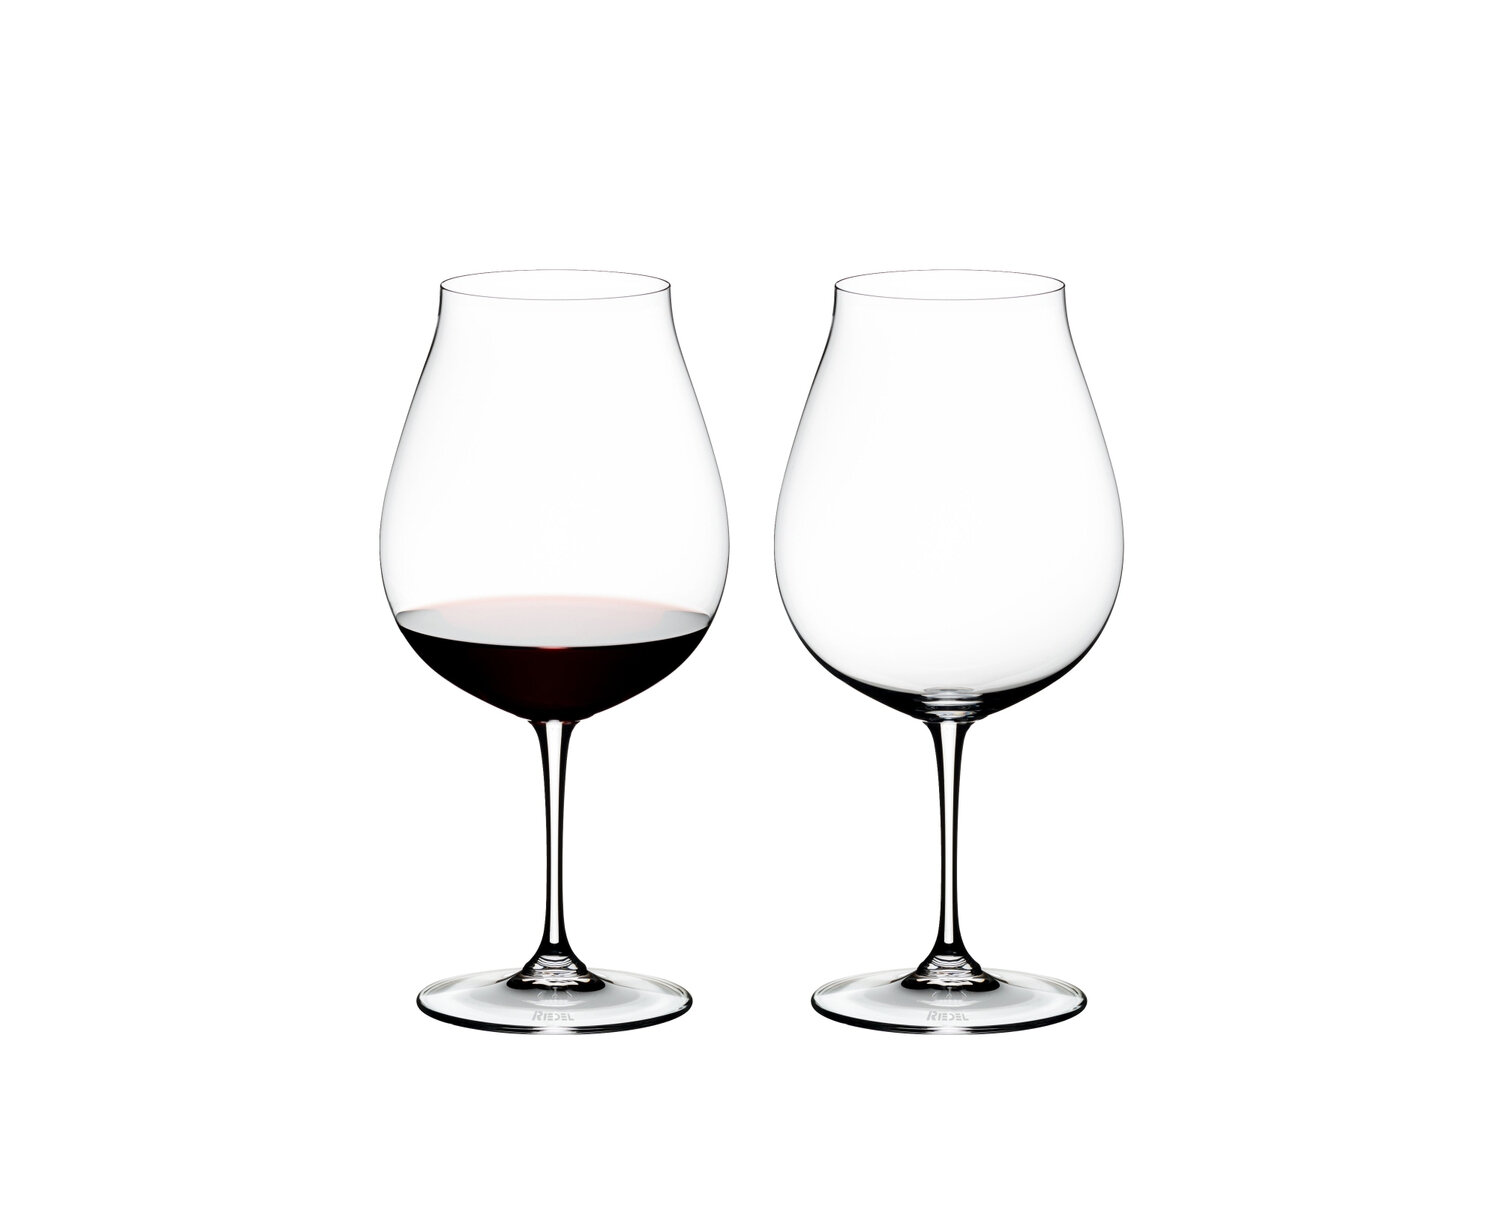 https://assets.wfcdn.com/im/69866769/compr-r85/1914/191497118/vinum-new-world-pinot-noir-wine-glass.jpg